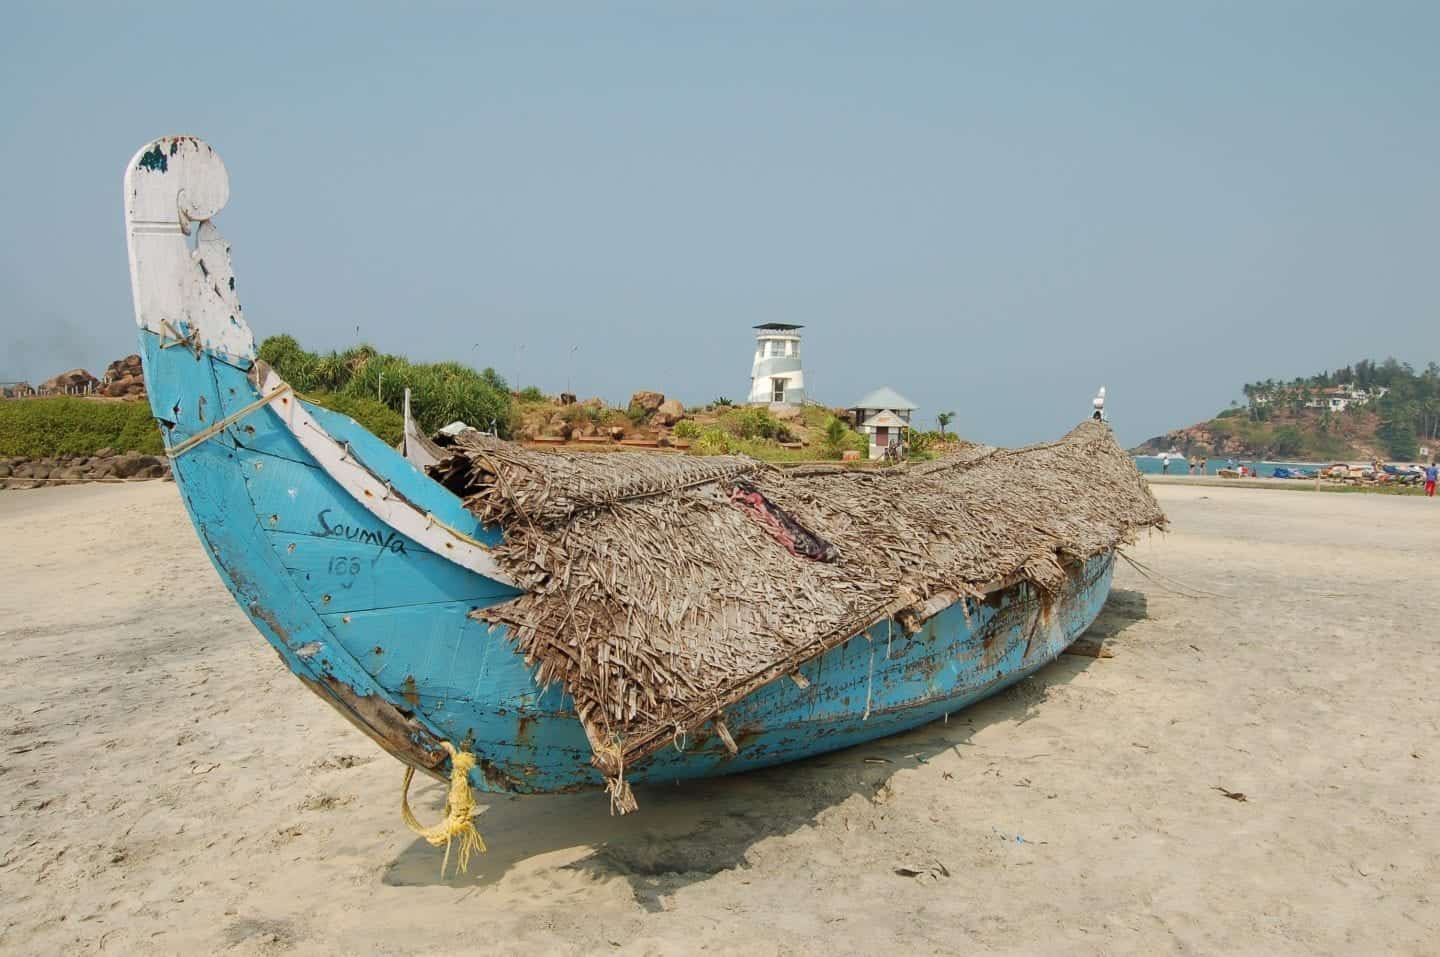 Los mejores lugares para visitar en Kerala, pequeño barco de pesca en la playa de arena